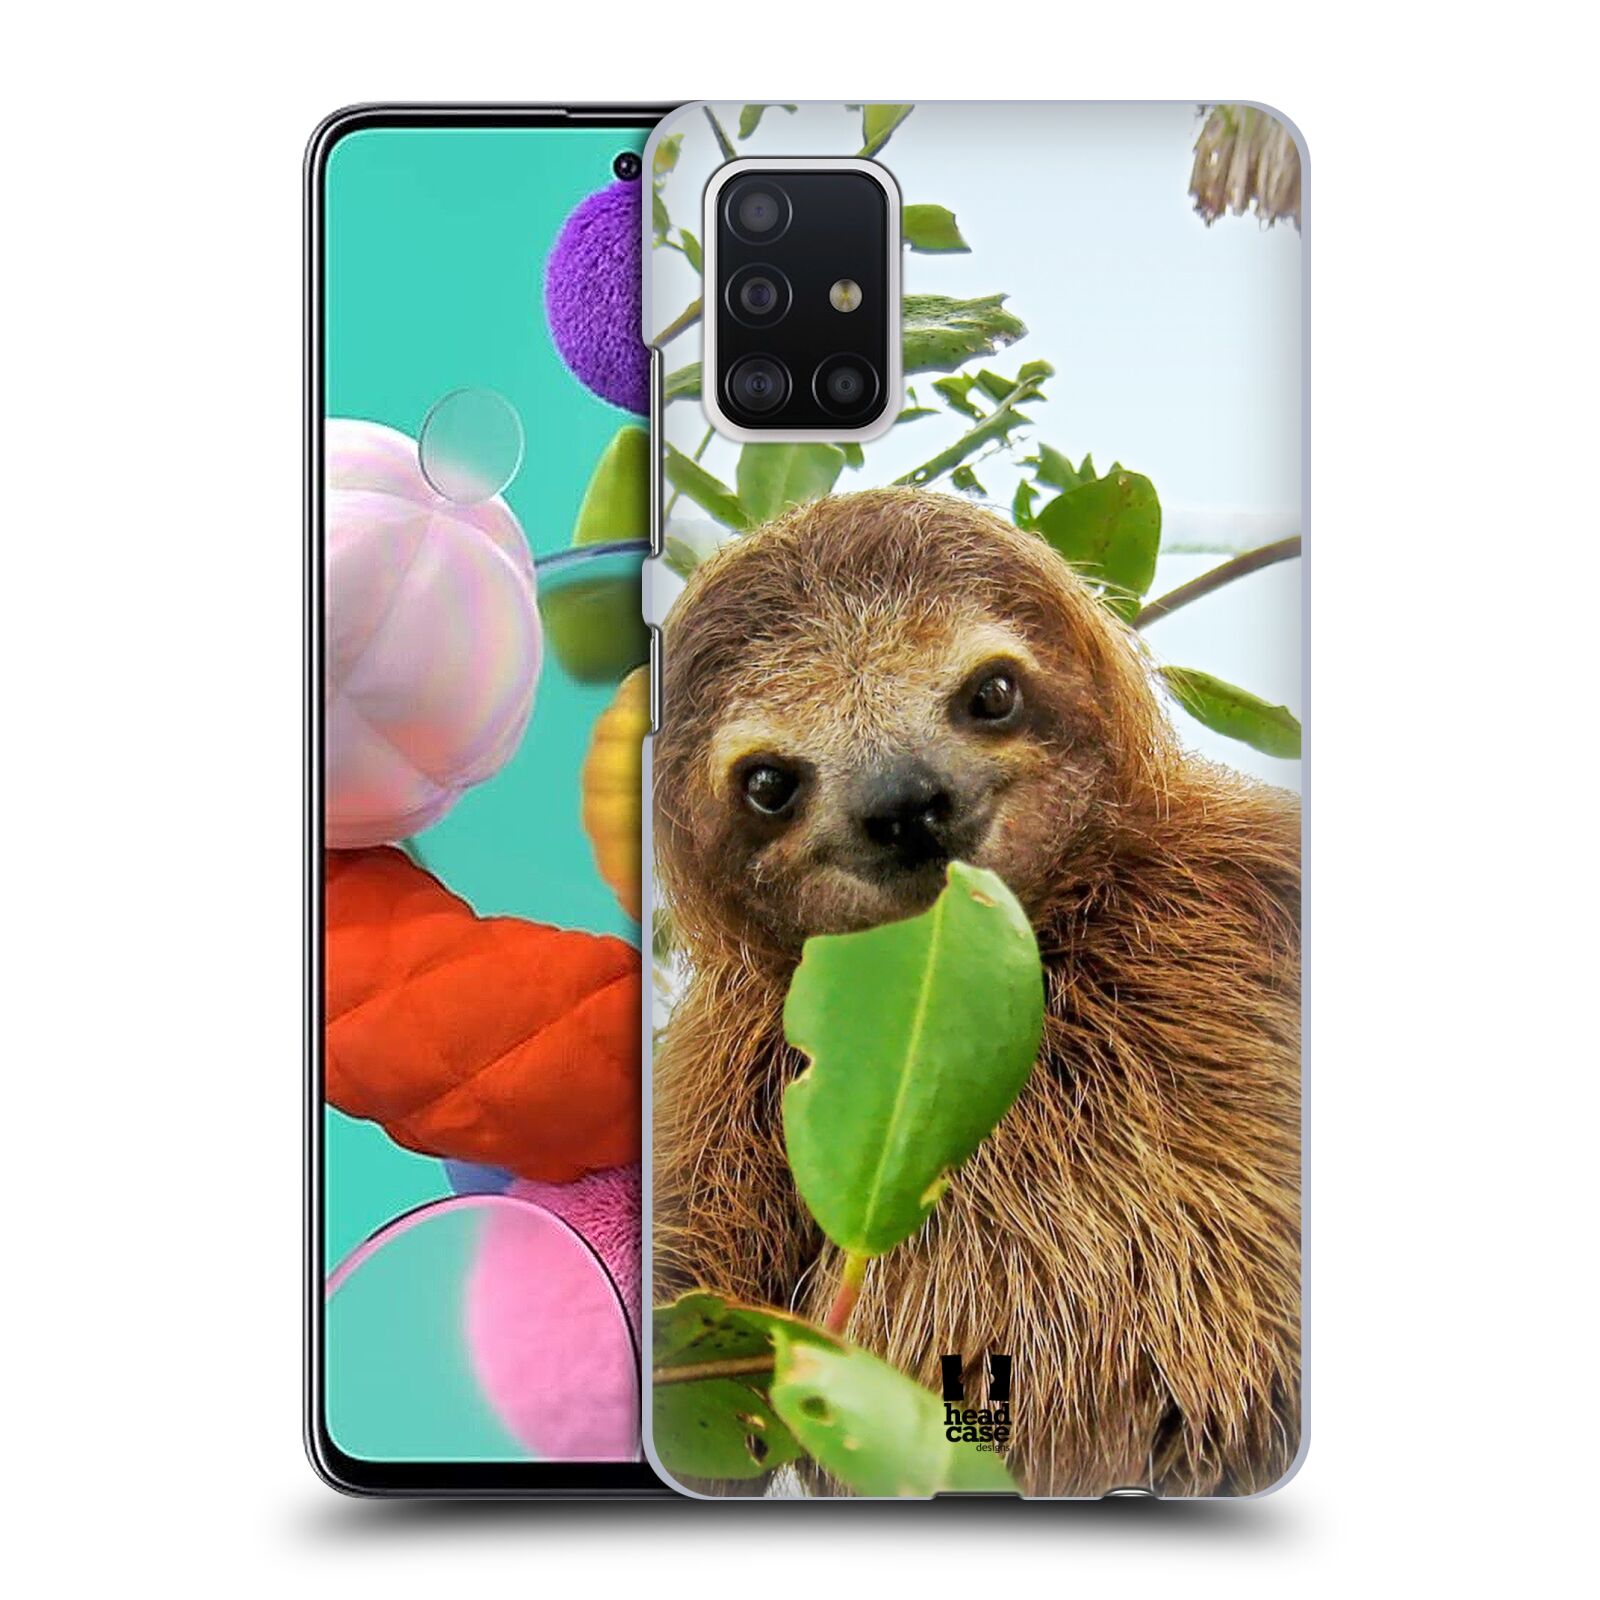 Pouzdro na mobil Samsung Galaxy A51 - HEAD CASE - vzor slavná zvířata foto lenochod